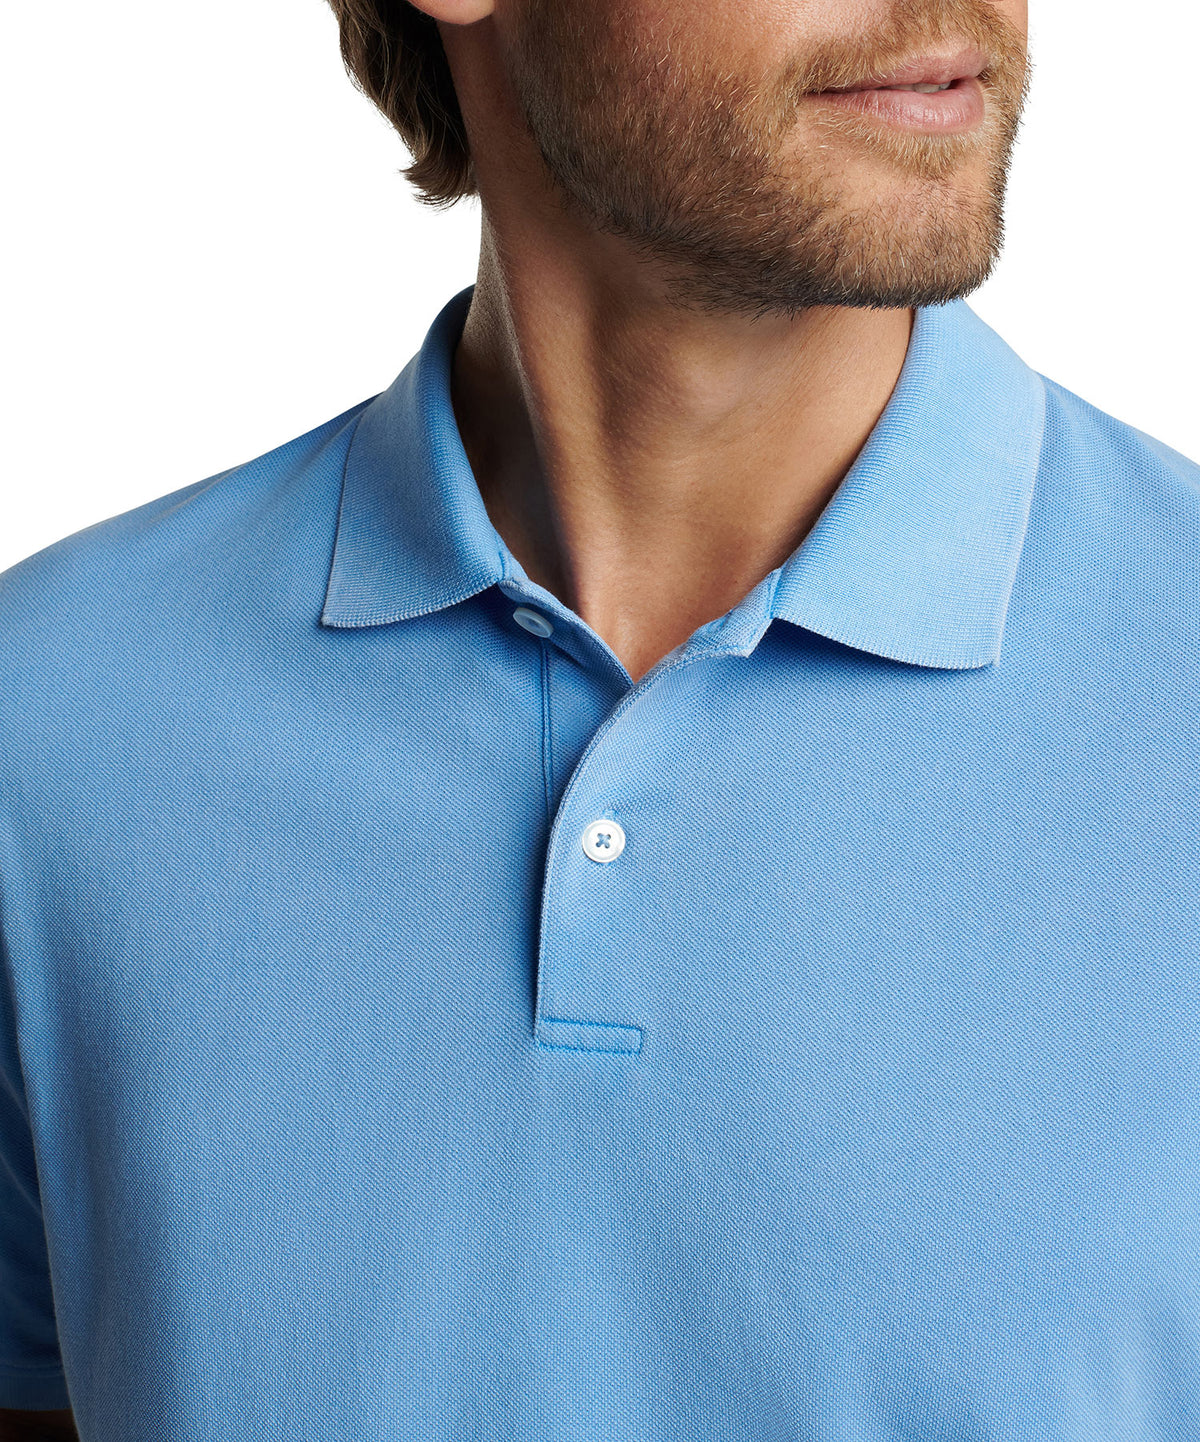 Peter Millar Short Sleeve Sunrise Pique Polo Knit Shirt, Men's Big & Tall